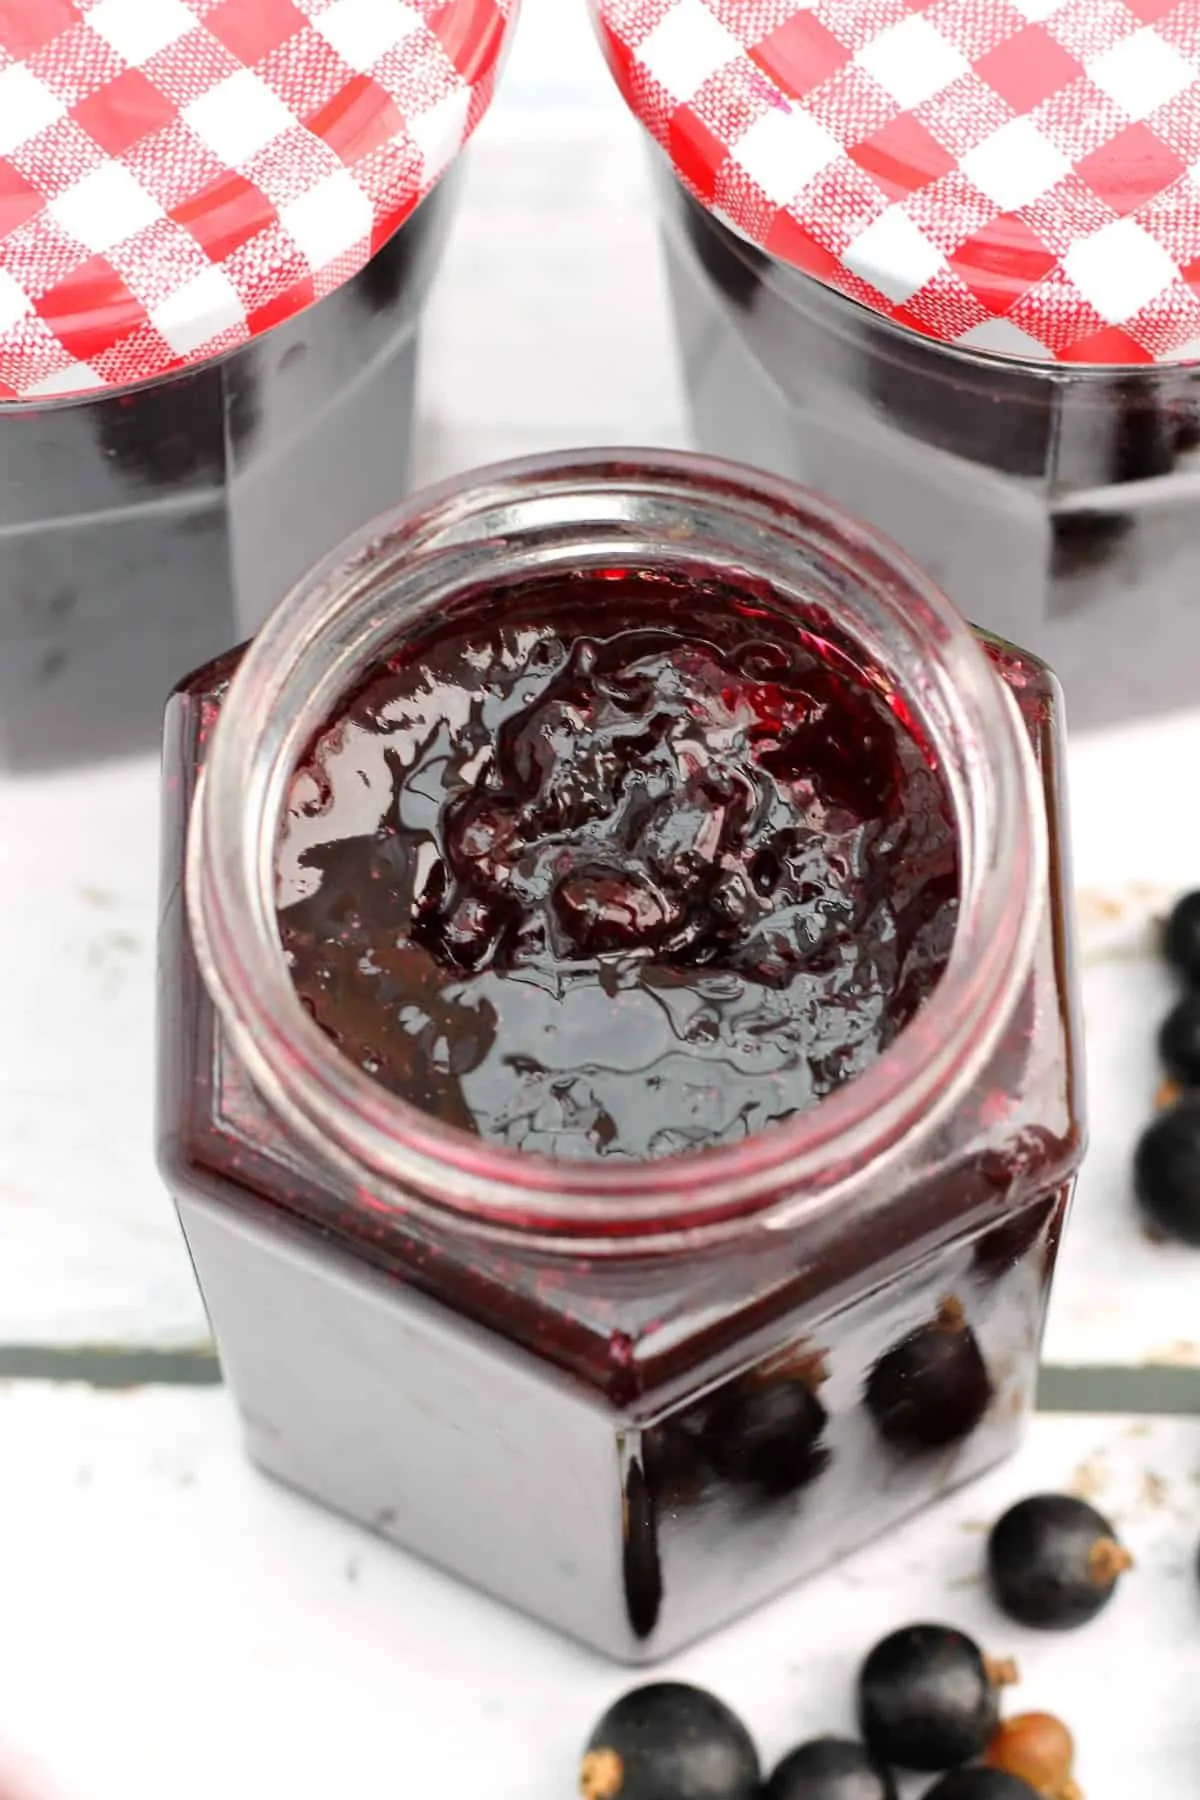 Overhead view of jam in an open jar.